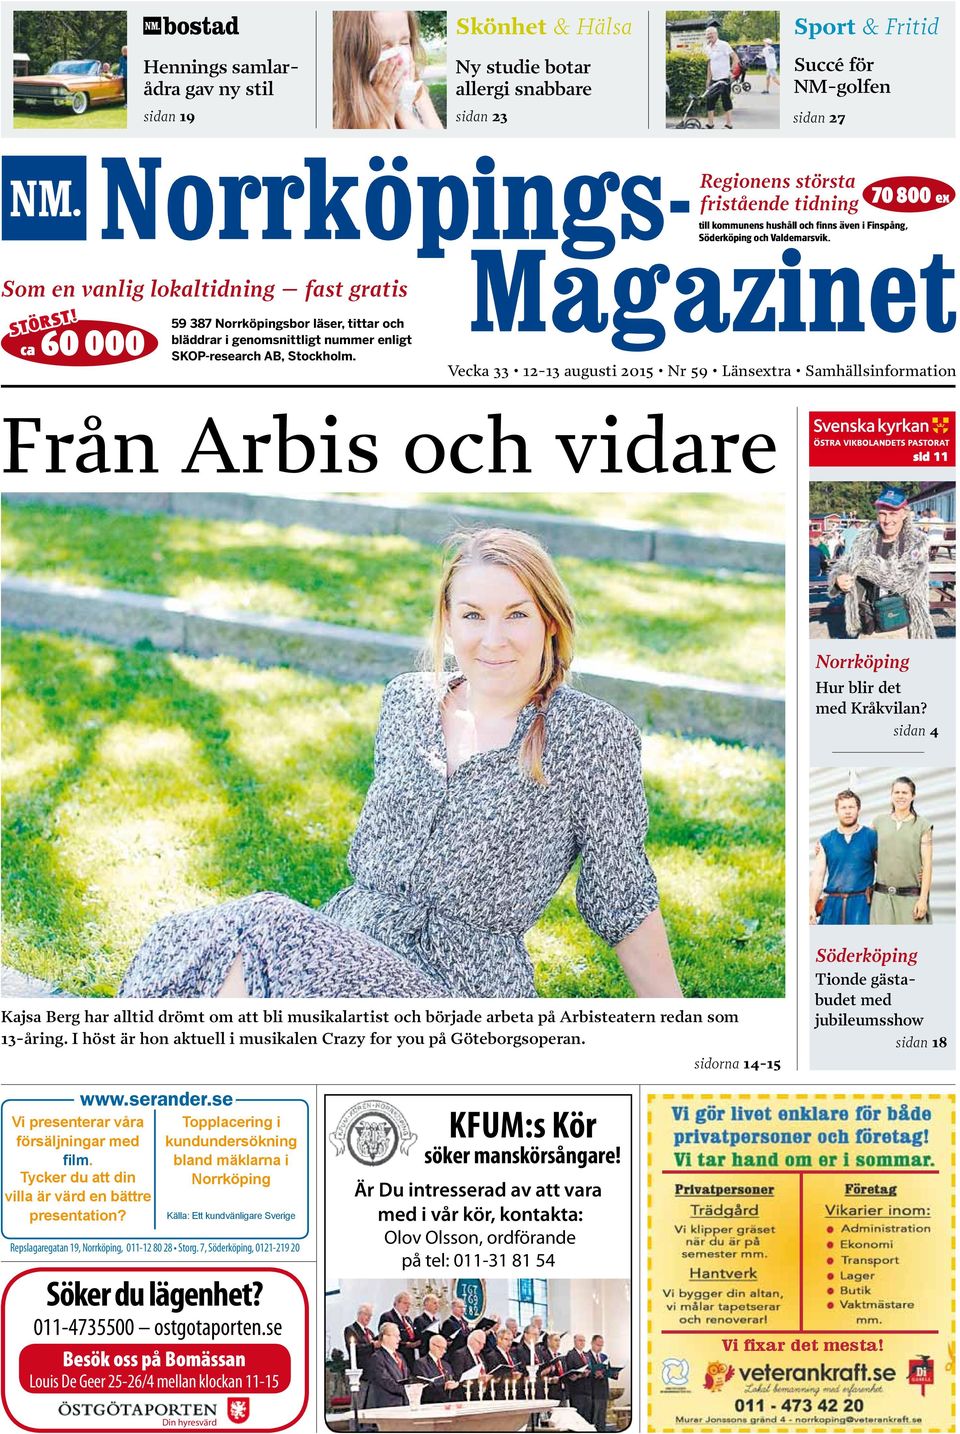 egionens största fristående tidning till kommunens hushåll och finns även i Finspång, öderköping och Valdemarsvik.